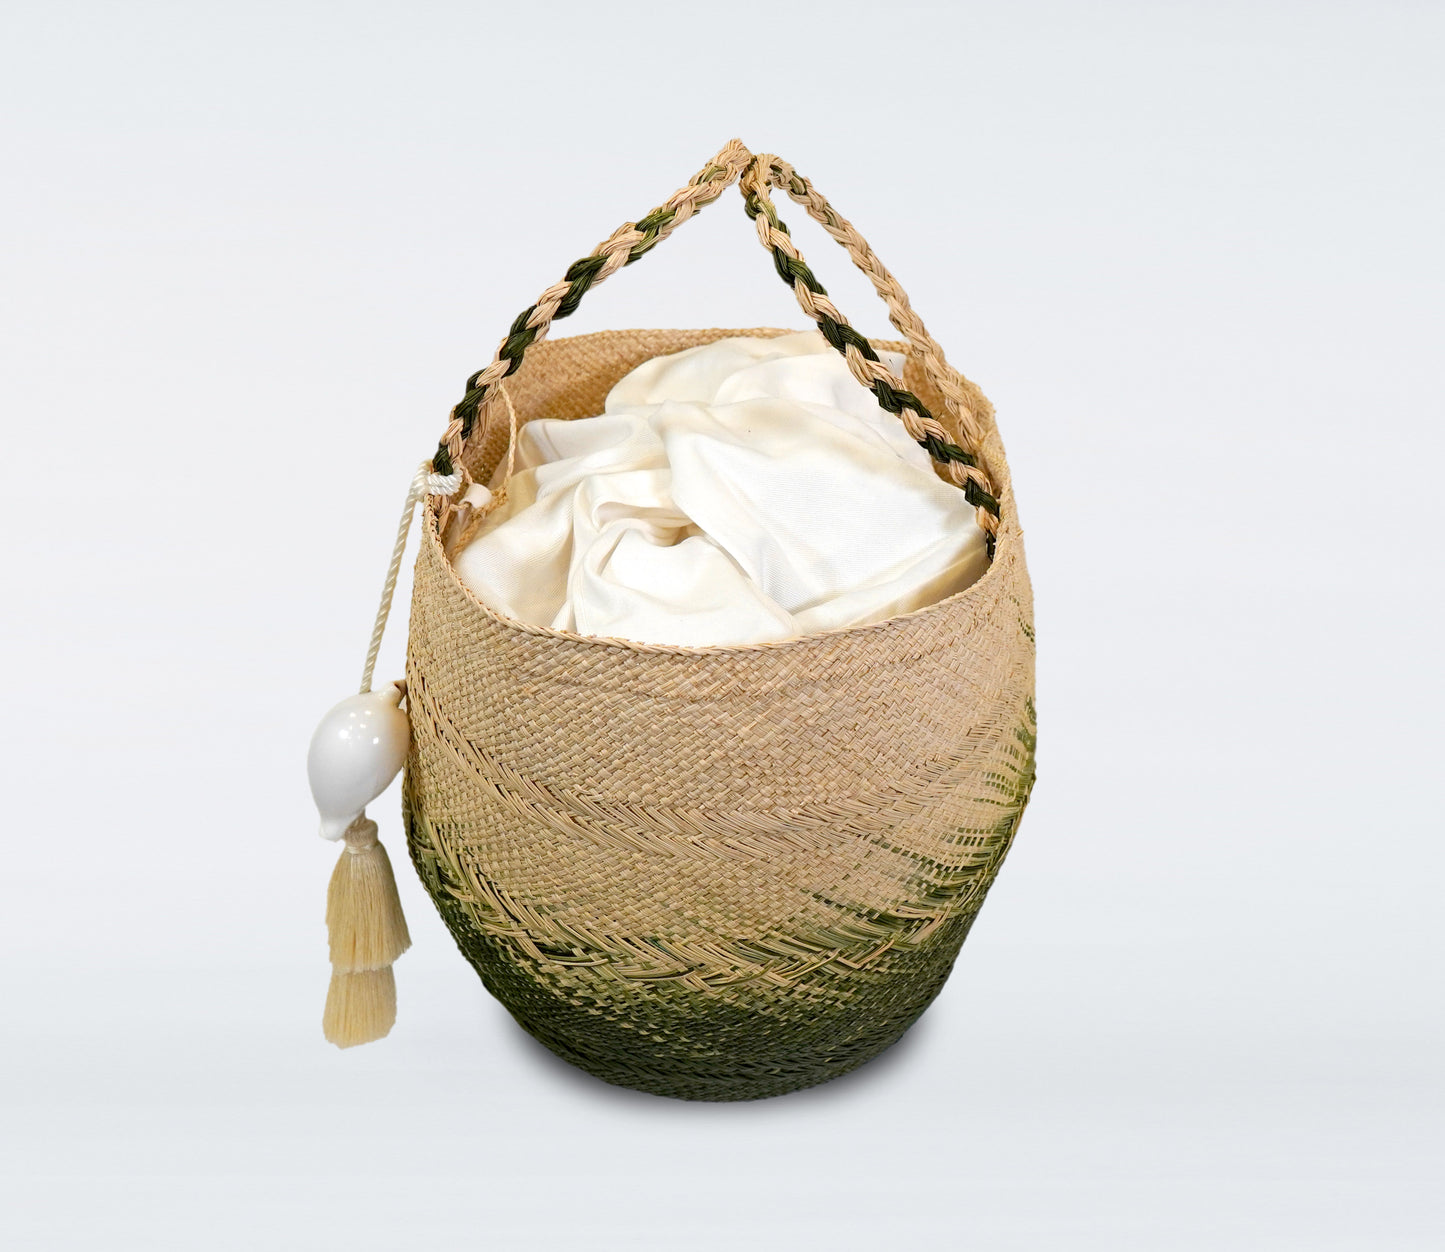 Milos: Bolso Capazo mediano en paja natural, verde oliva, bolsa de algodón y concha natural.